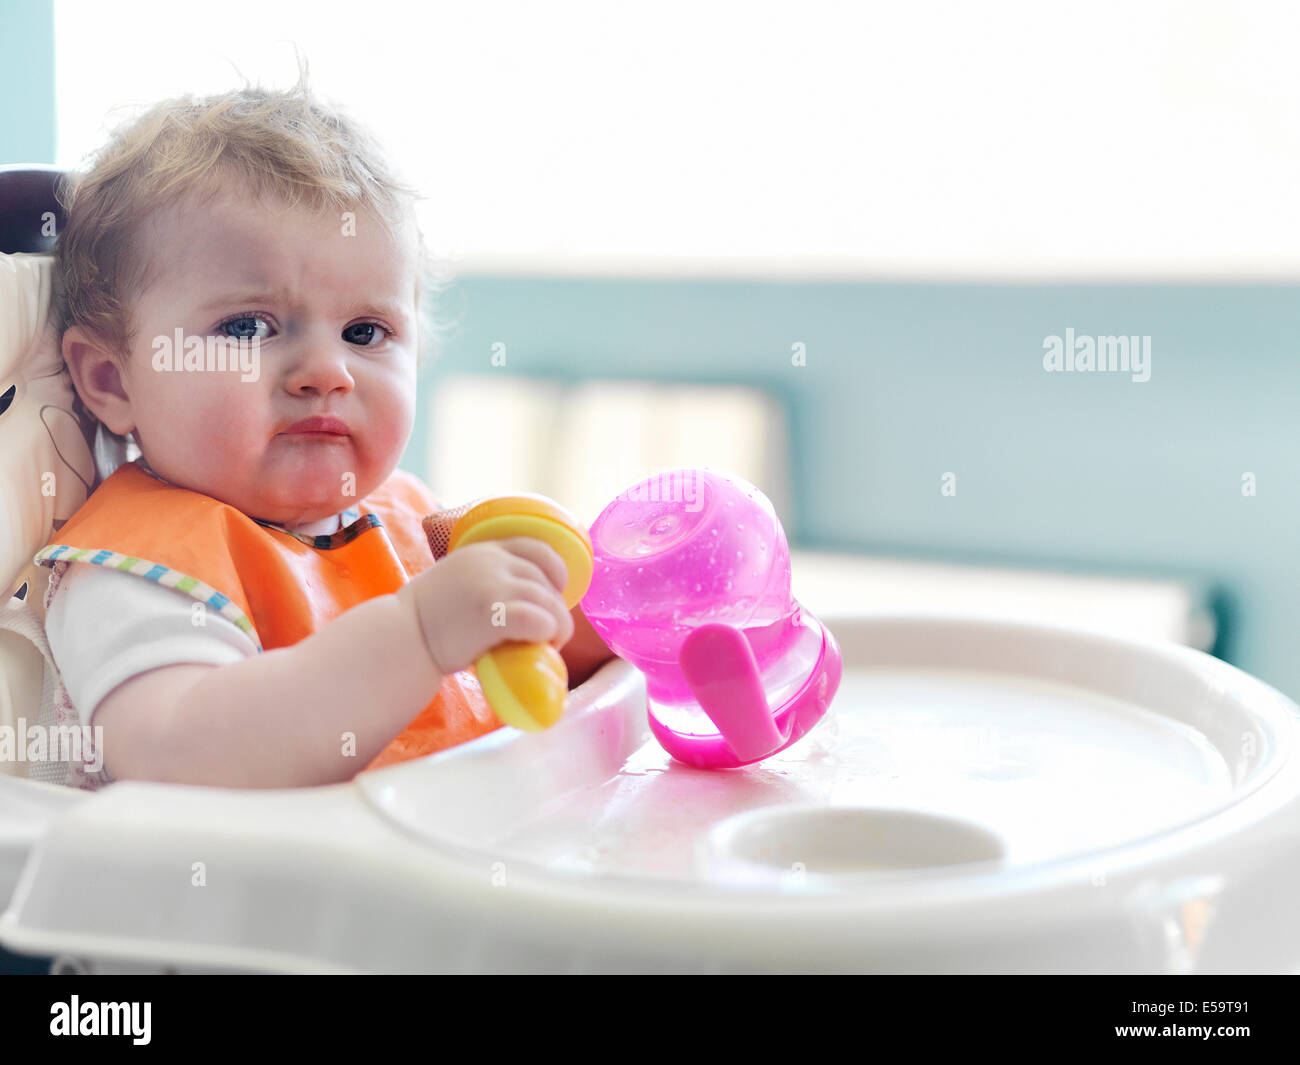 Bambina gioca con sippy cup in sedia alta Foto Stock